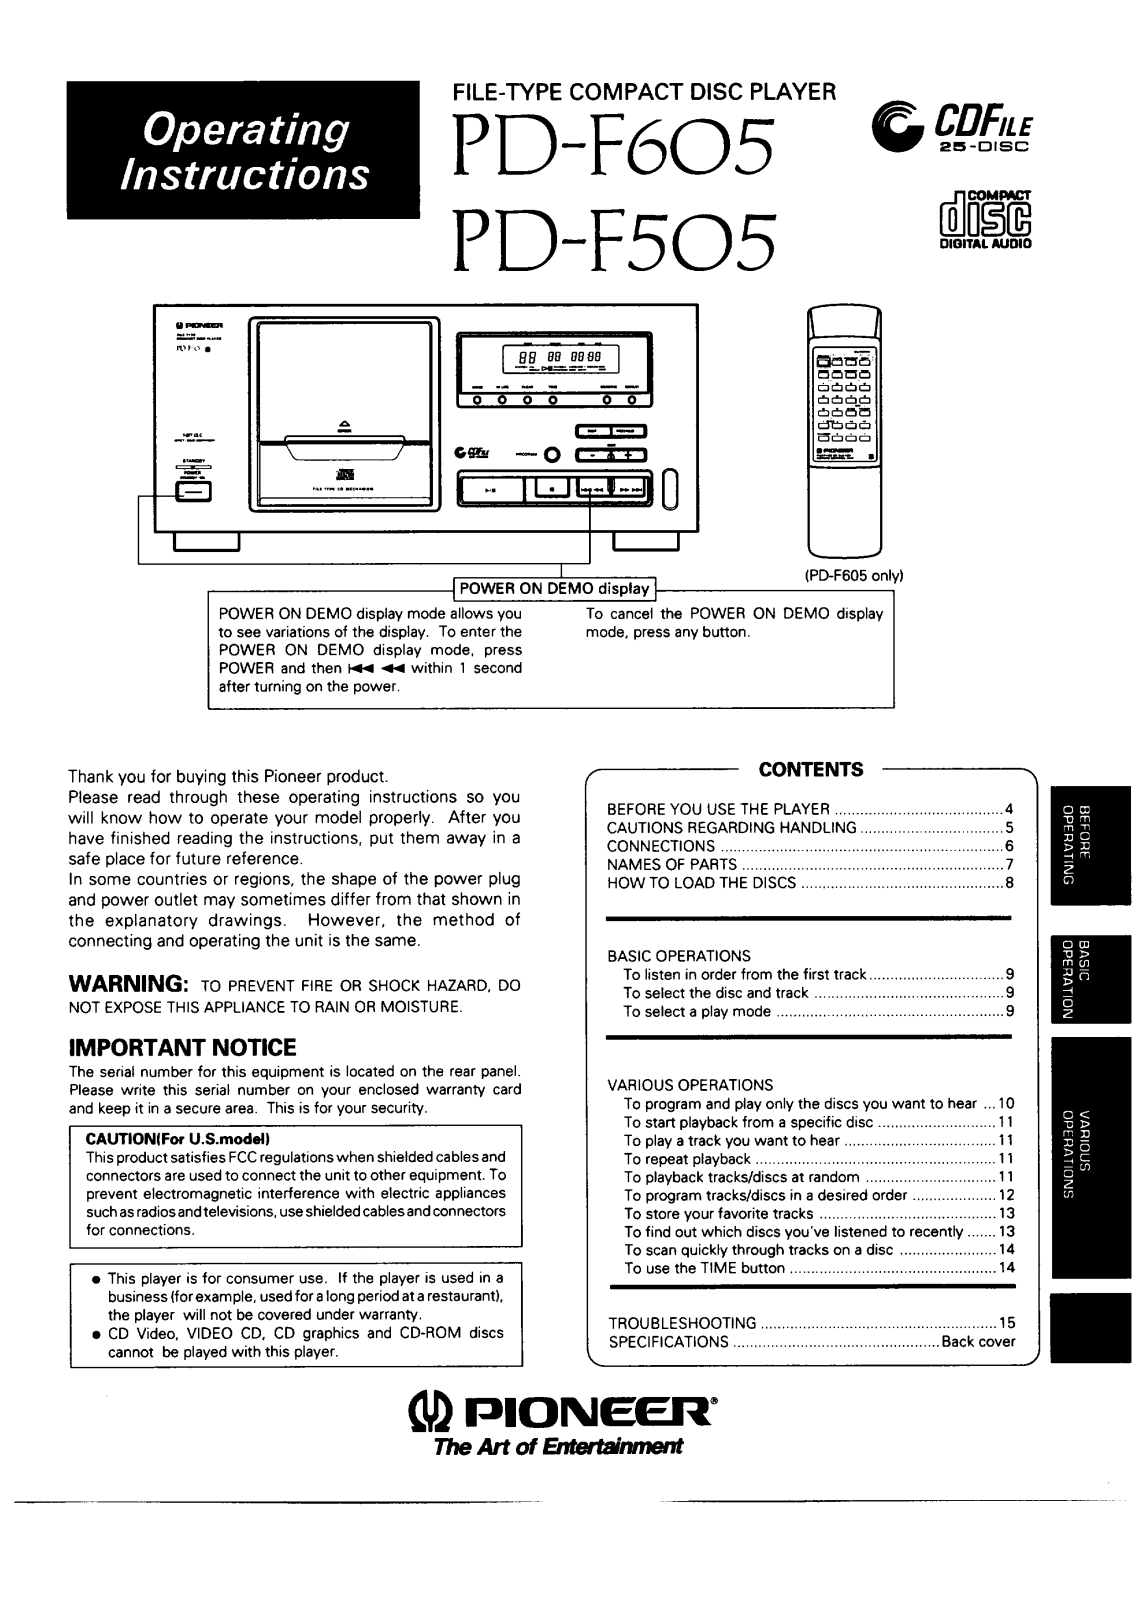 Pioneer PDF-505 Owners manual